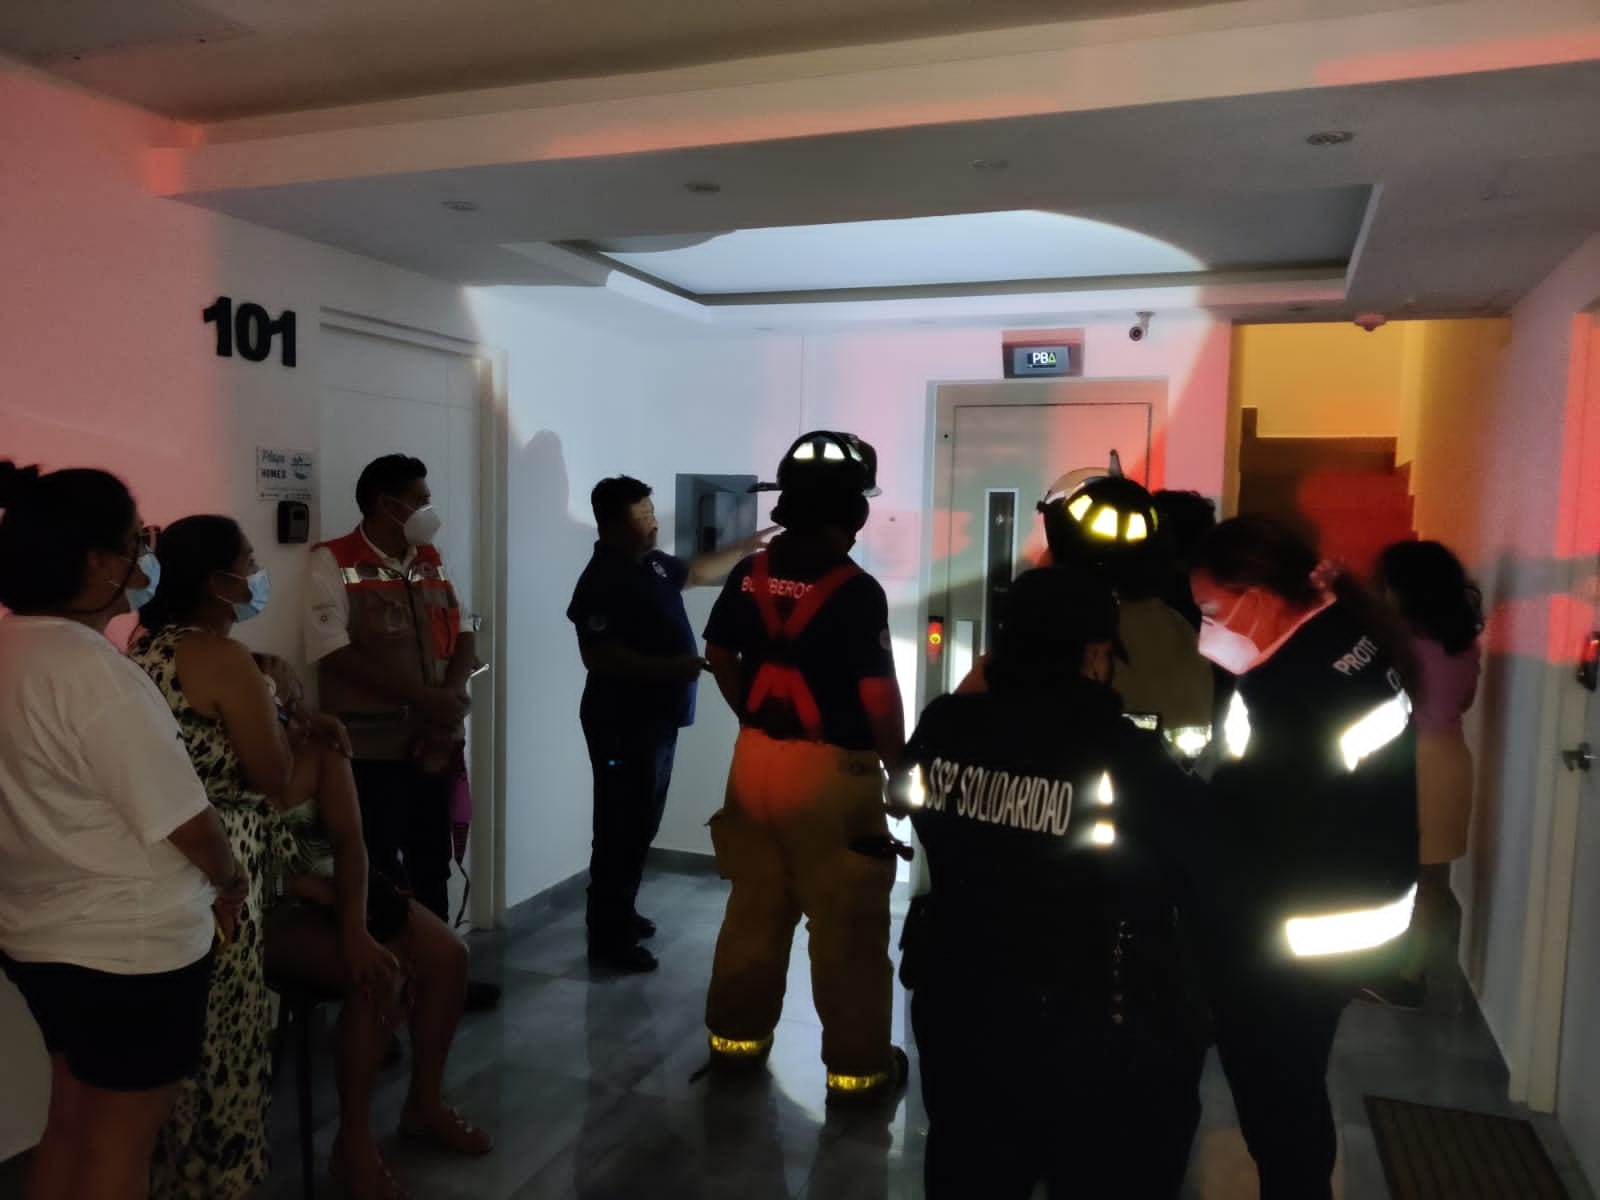 En Playa del Carmen, turistas quedan atrapadas en el elevador de un condominio